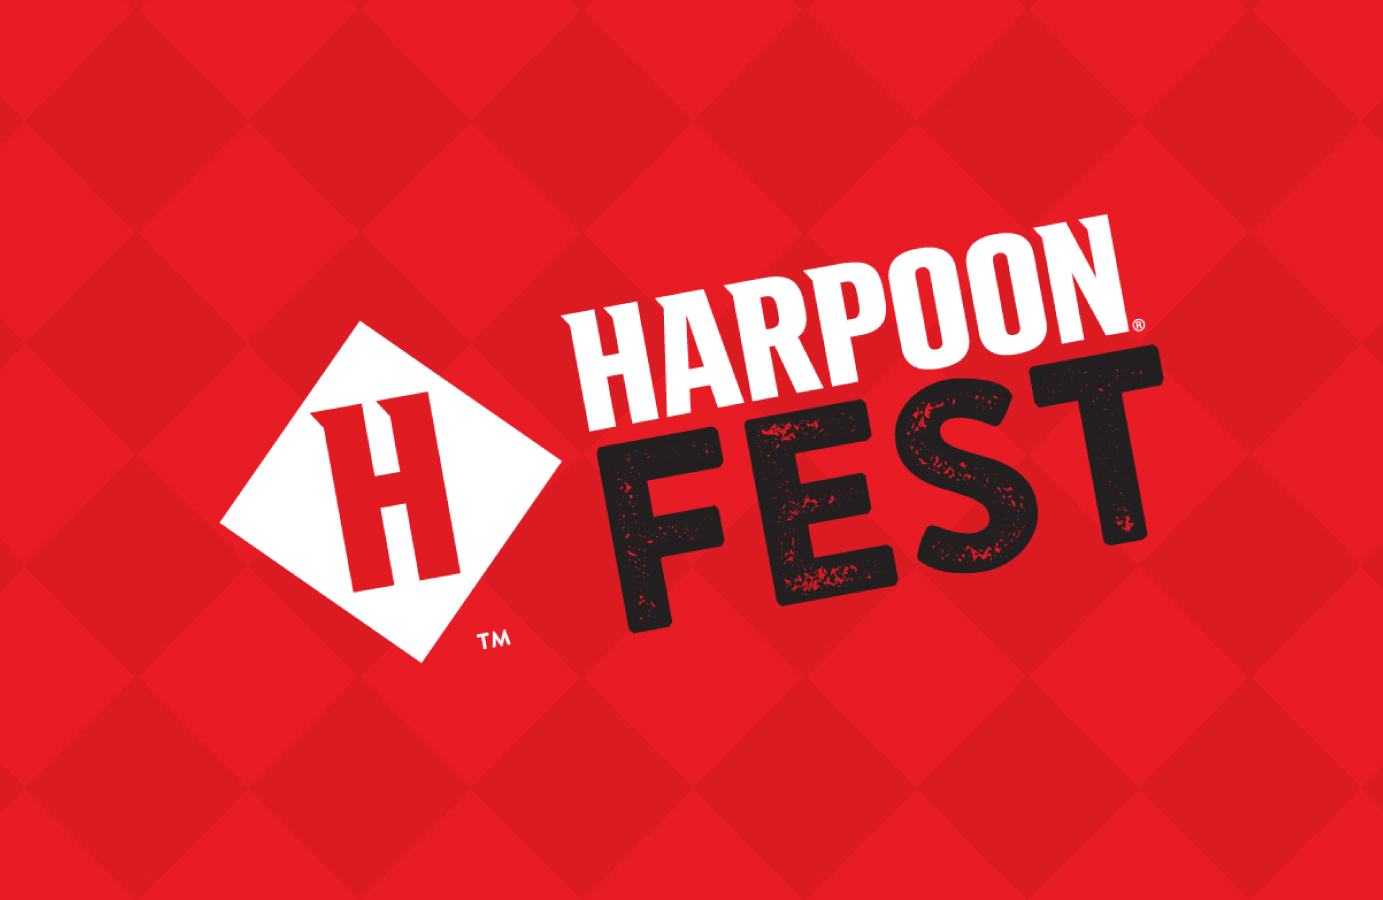 harpoon octoberfest 2021